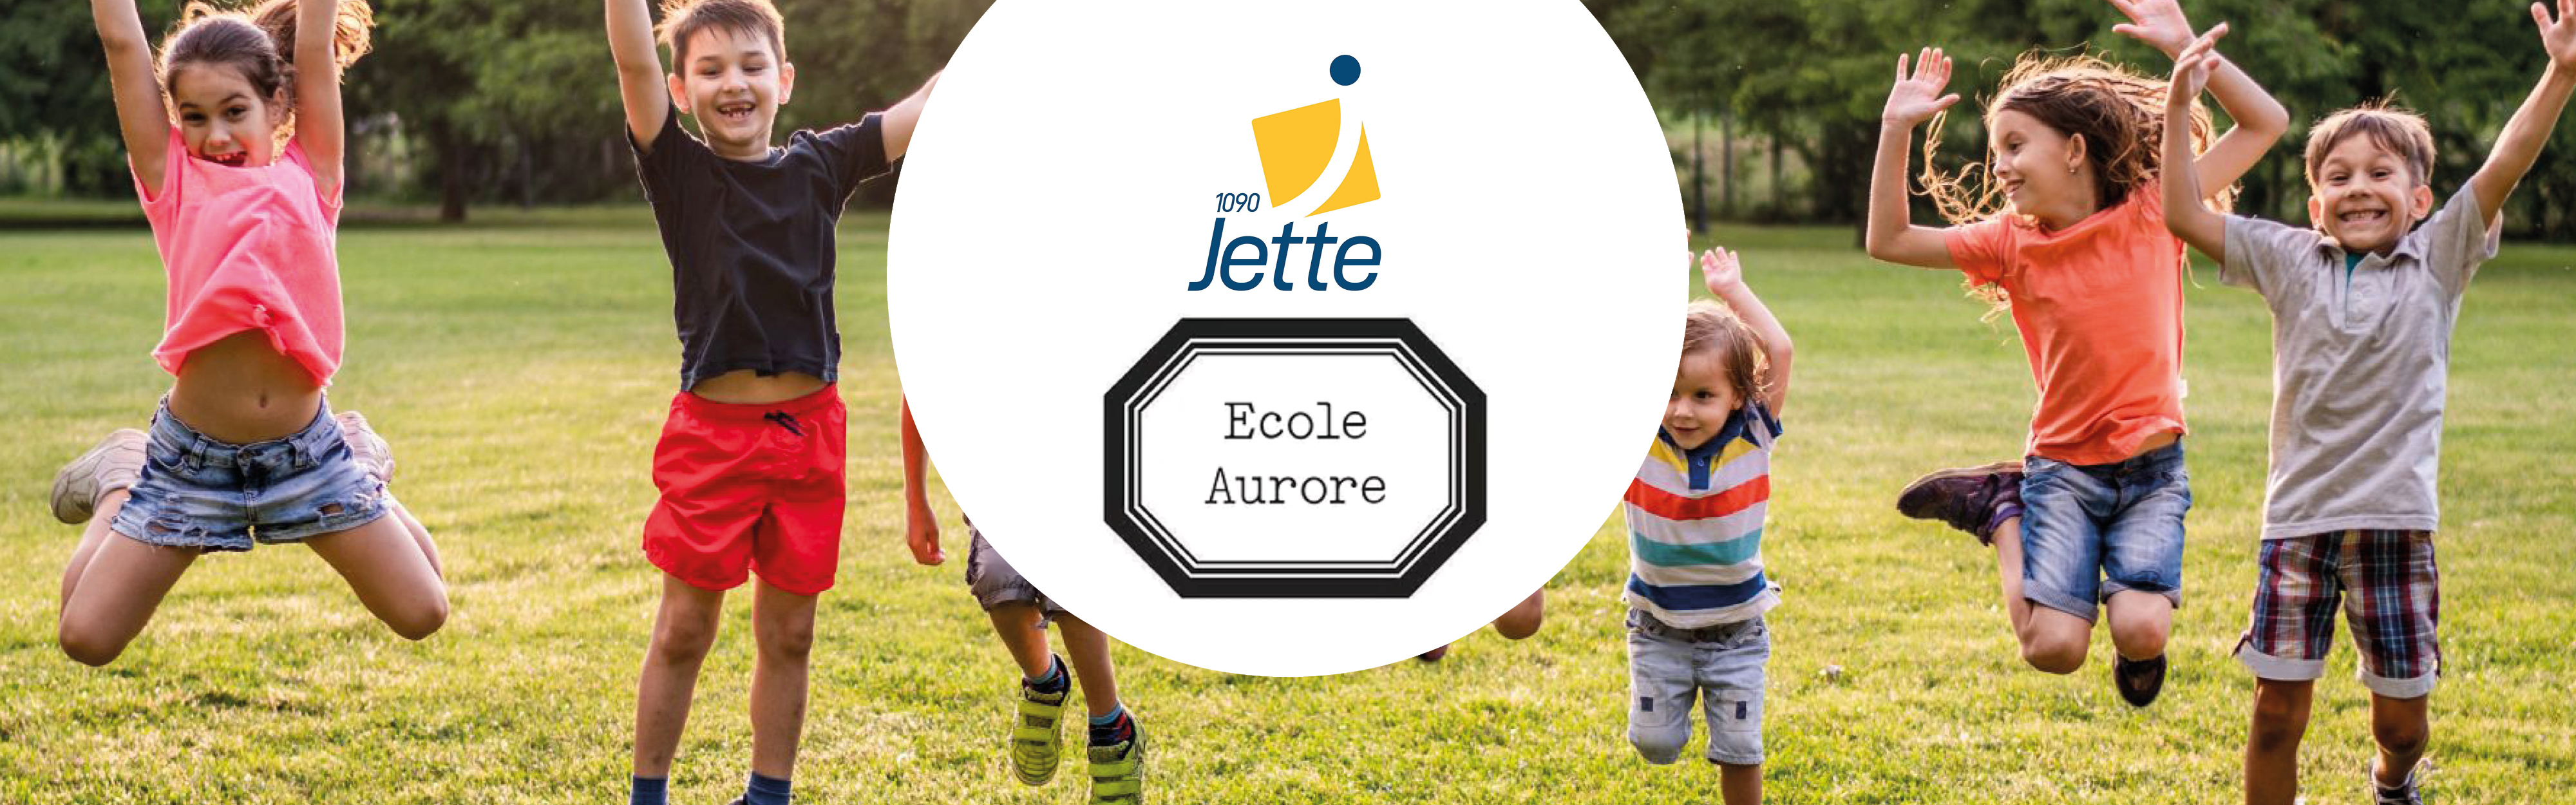 Jette - Ecole Aurore